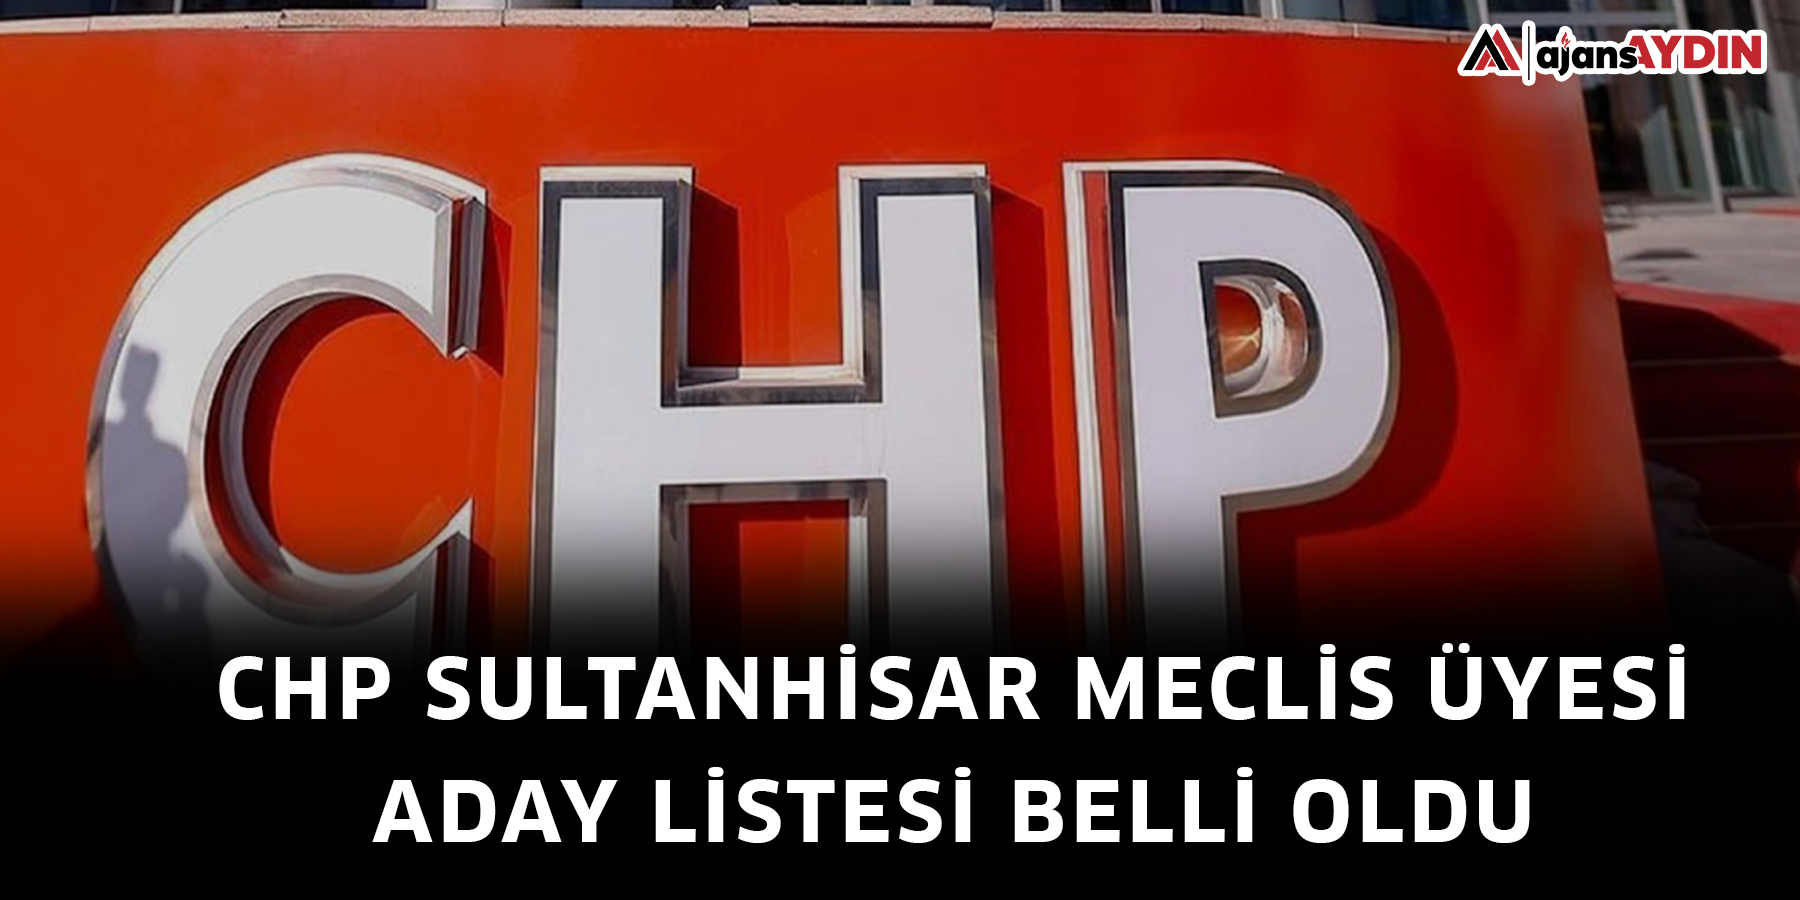 CHP Sultanhisar Meclis Üyesi aday listesi belli oldu